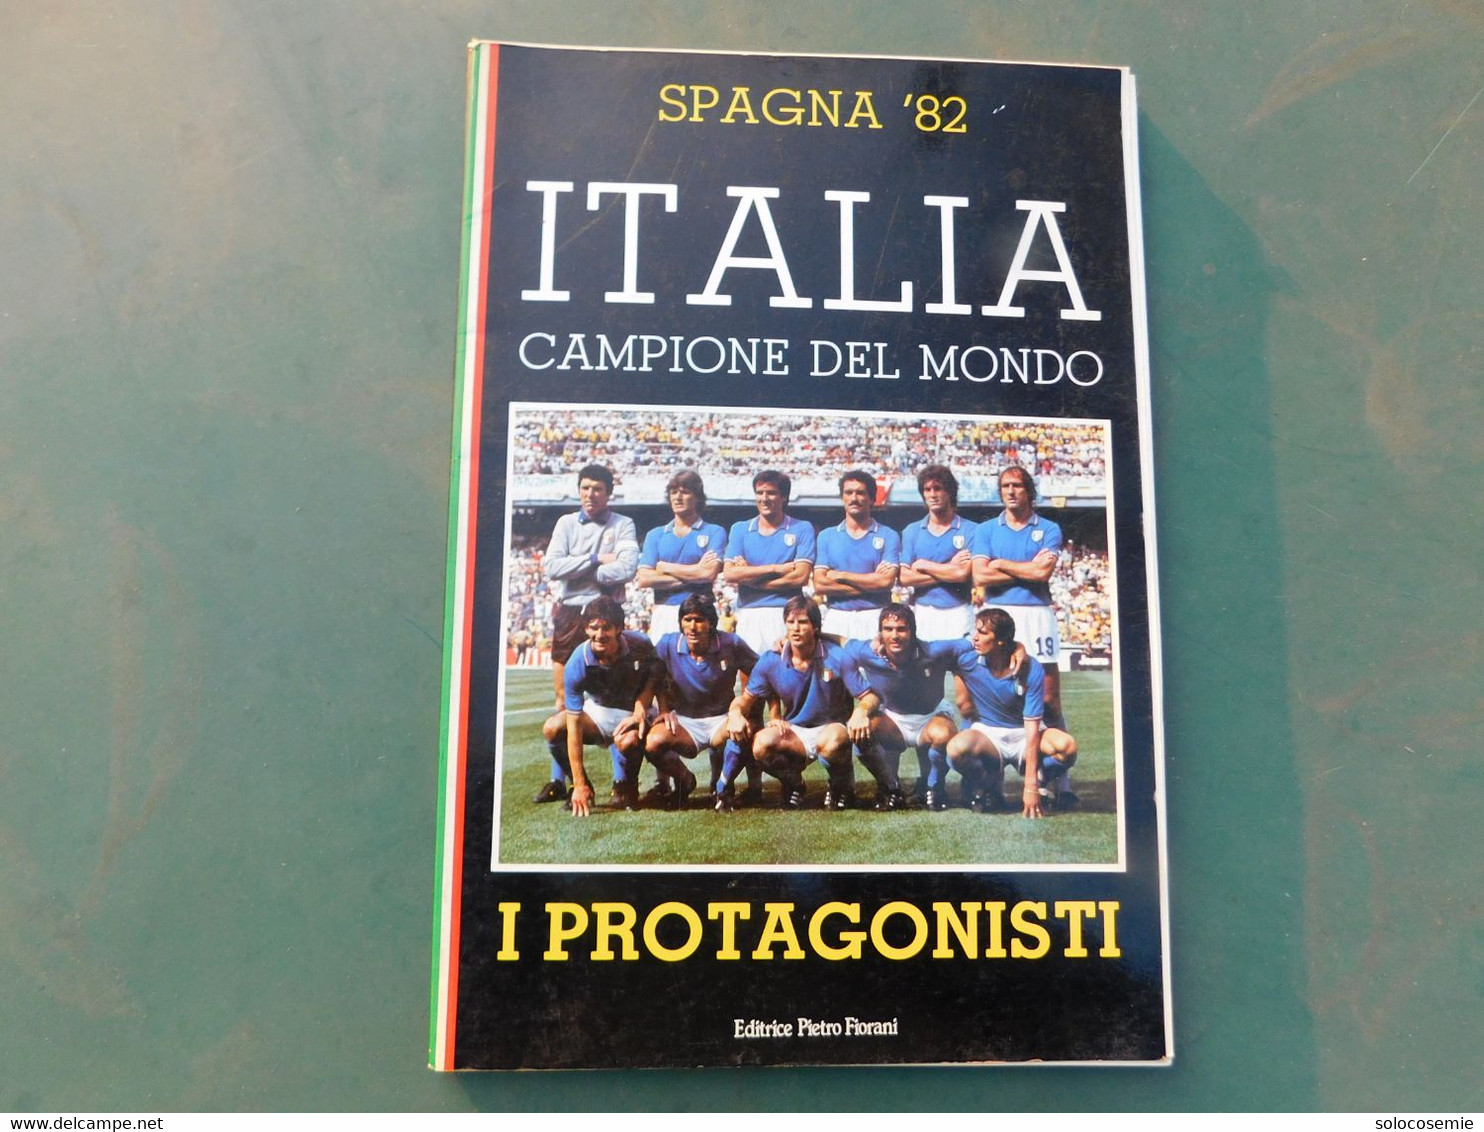 Spagna '82 - ITALIA CAMPIONE DEL MONDO  -I Protagonisti, Editrice Fiorani - Da Identificare